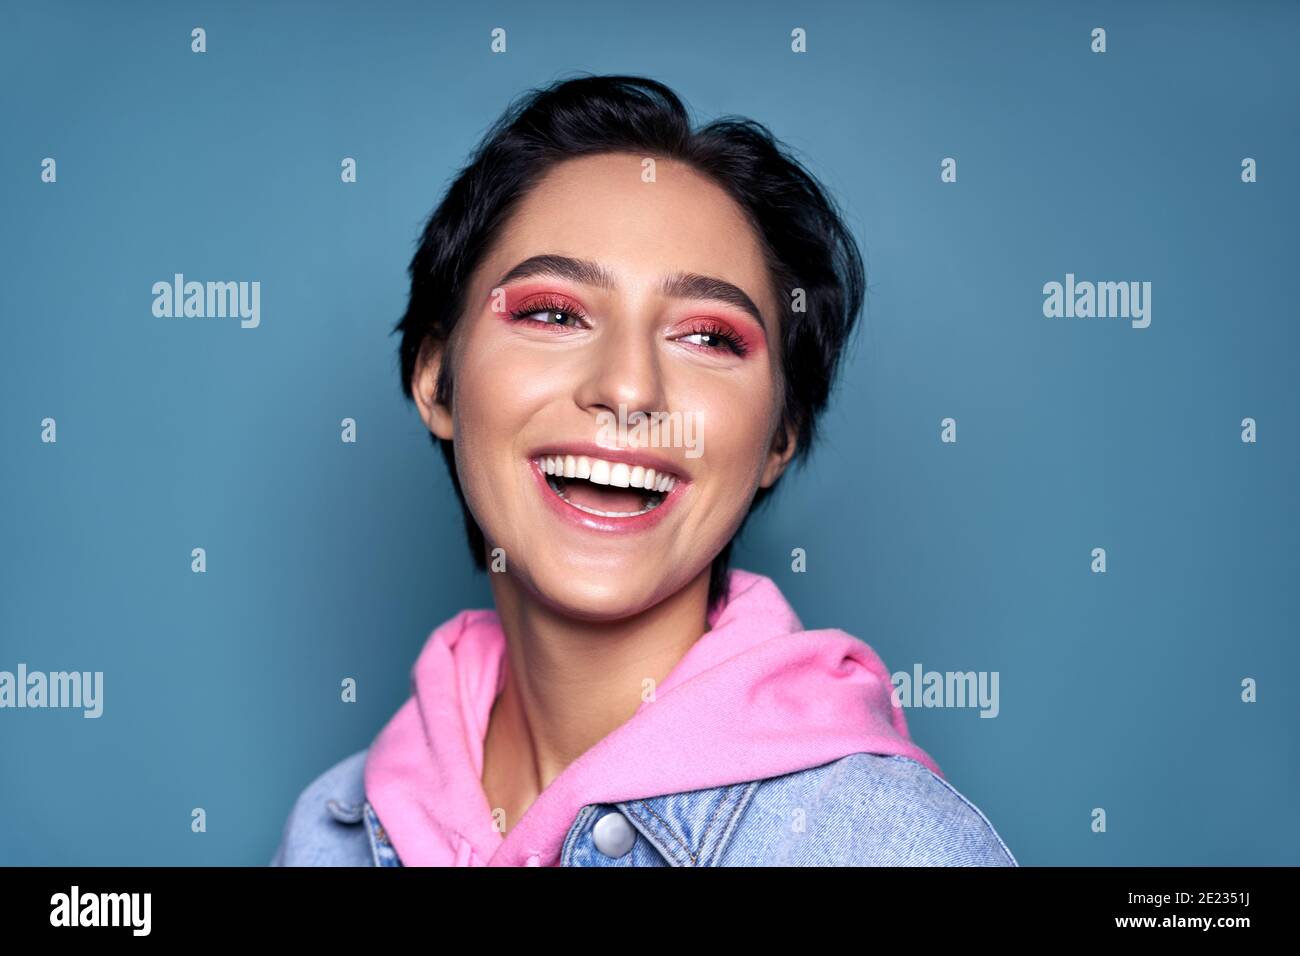 Cara de la adolescente feliz con sonrisa dental saludable aislada encendido fondo azul Foto de stock